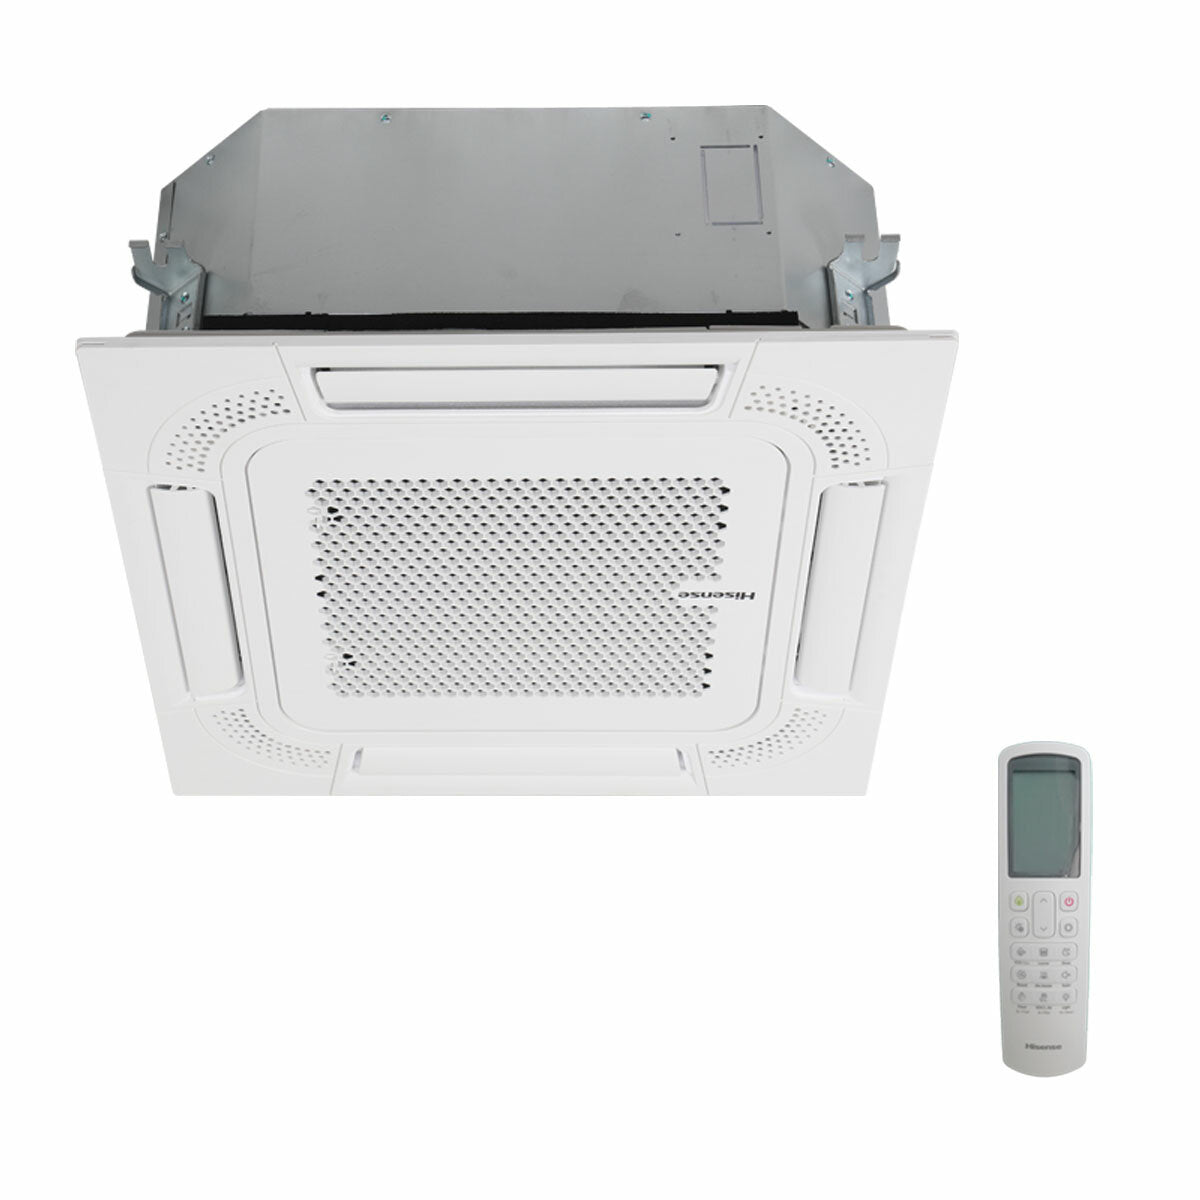 Hisense air conditioner ACT dual split cassette 9000+18000 BTU inverter A++ outdoor unit 5.5 kW